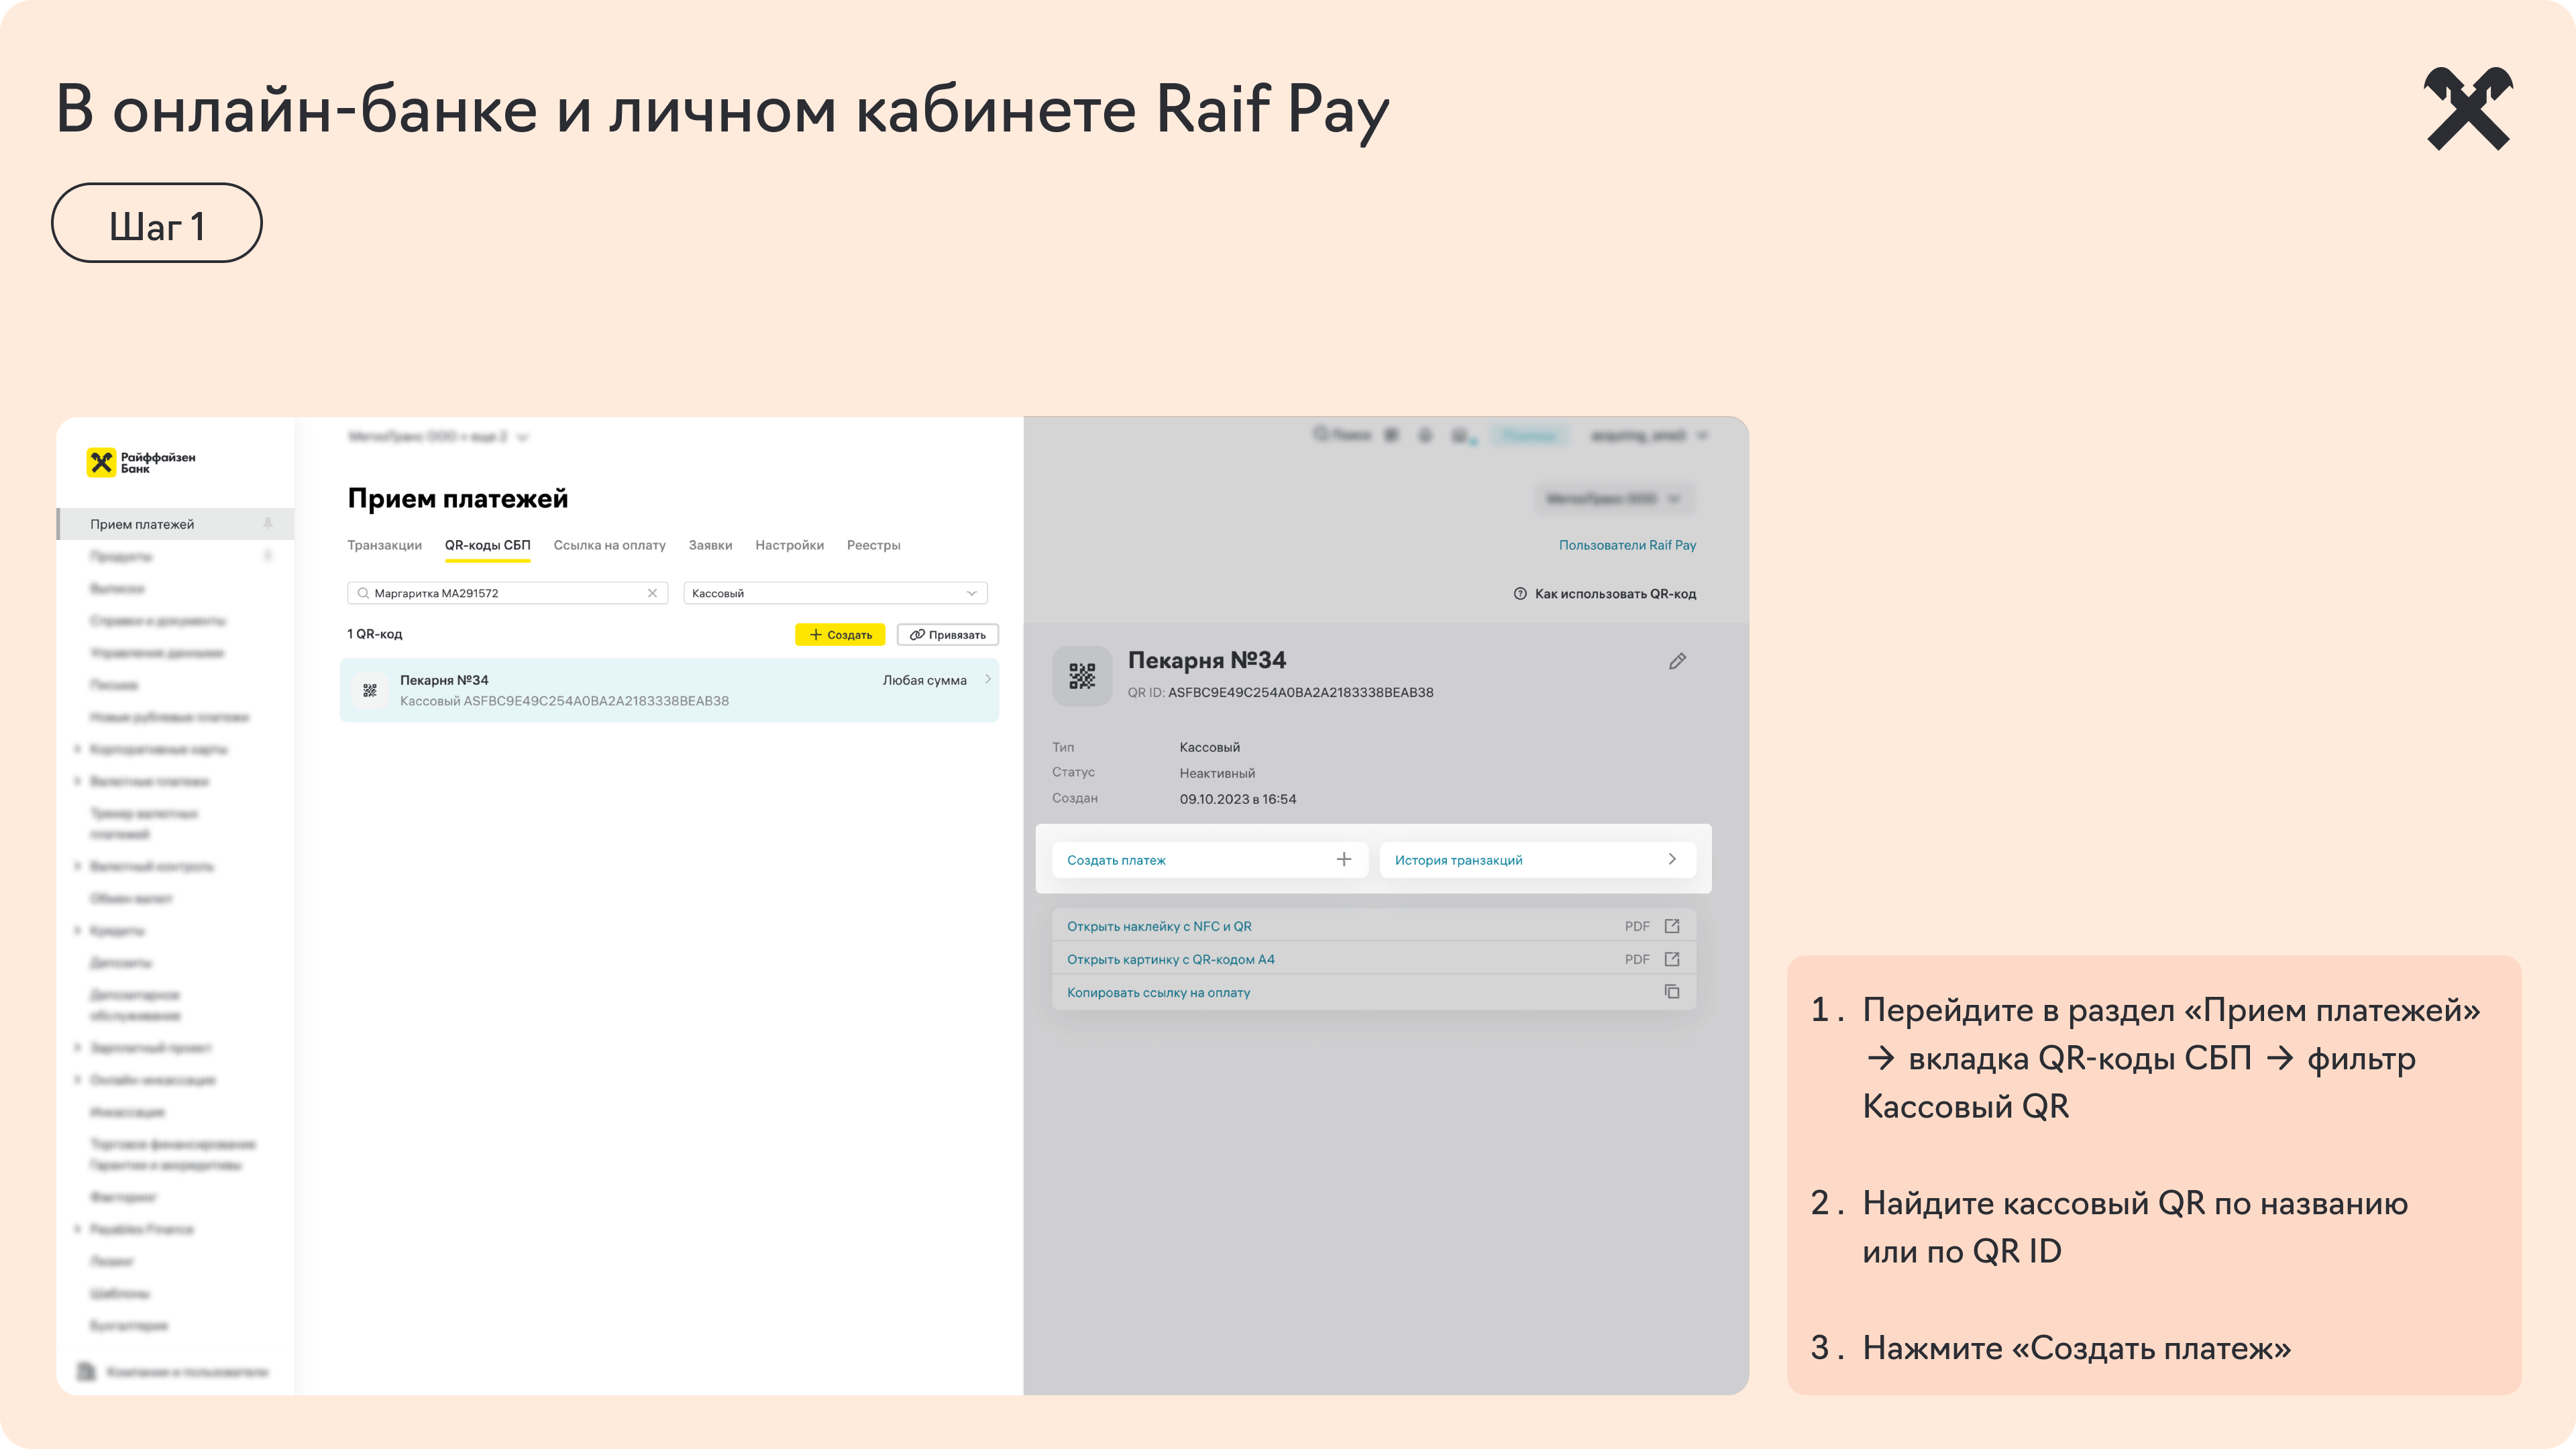 прием_платежей_в_онлайн-банке_(2).png